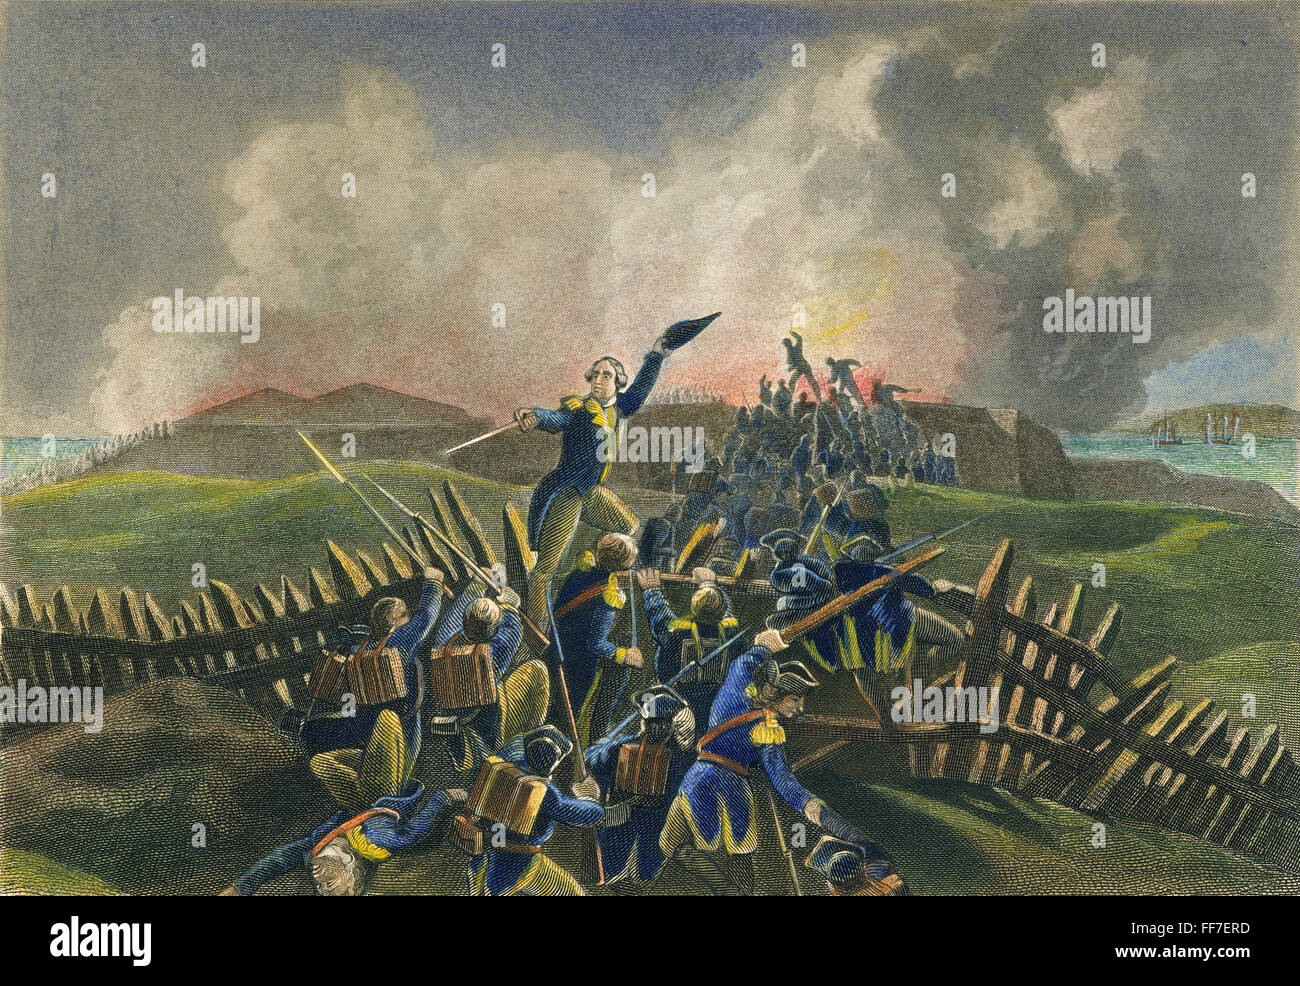 Battaglia di STONY POINT, 1779. /NAmerican truppe sotto generale Anthony Wayne sorprendente e catturare la guarnigione britannica a Stony Point, New York, il 16 luglio 1779. Incisione in acciaio, americano, 1857. Foto Stock